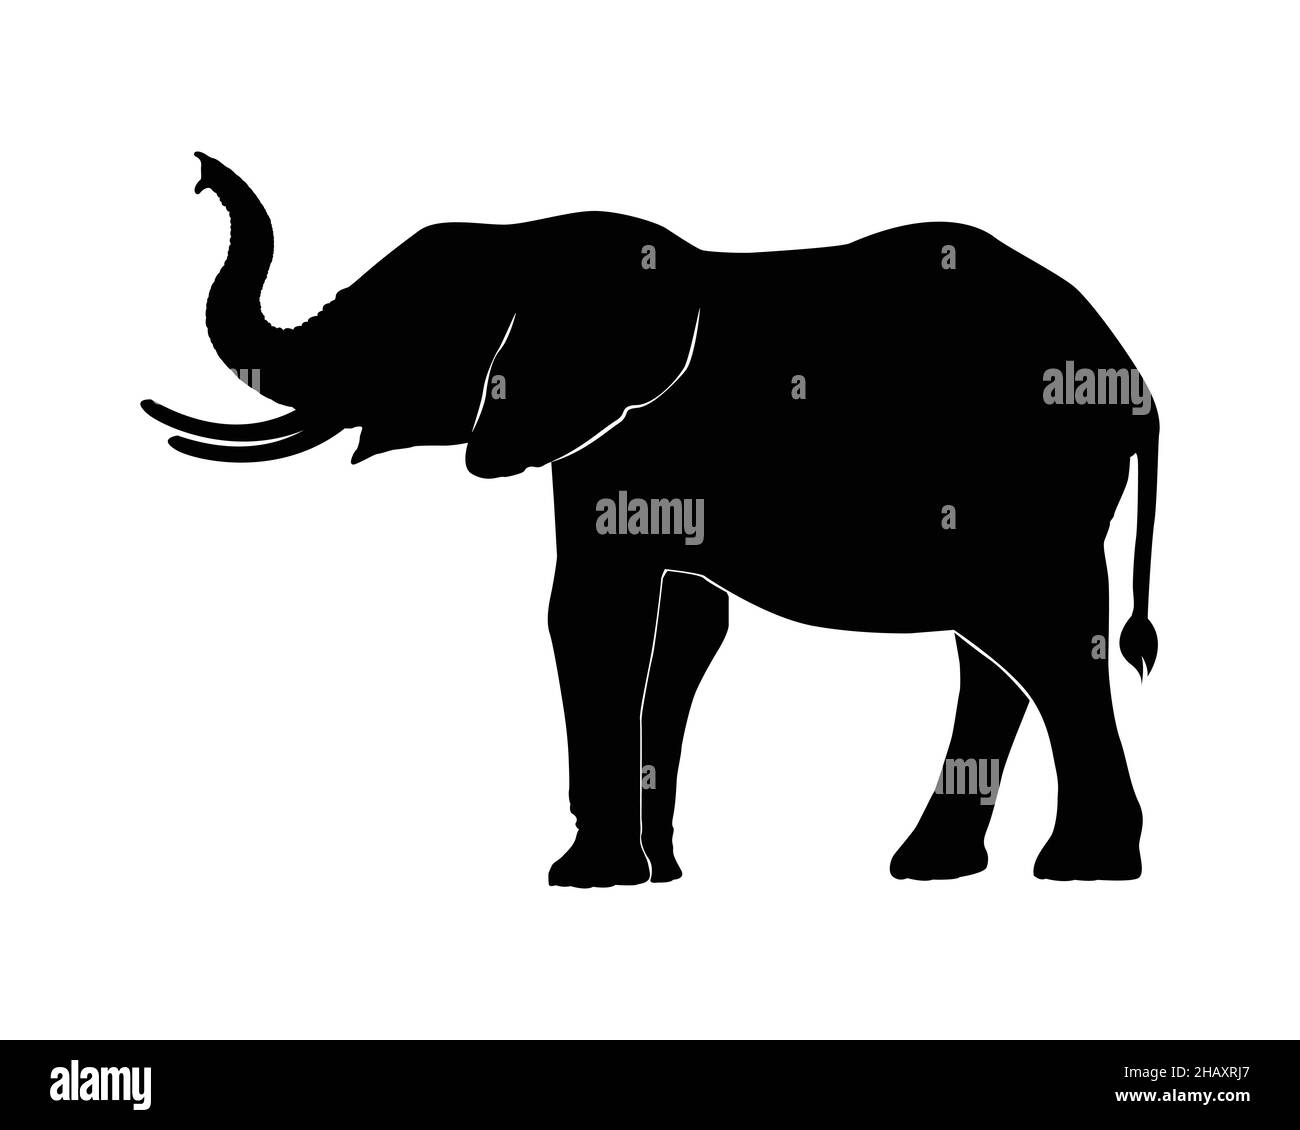 Elefantenfamilie auf weißem Hintergrund. ElefantenSilhouette. Stock Vektor